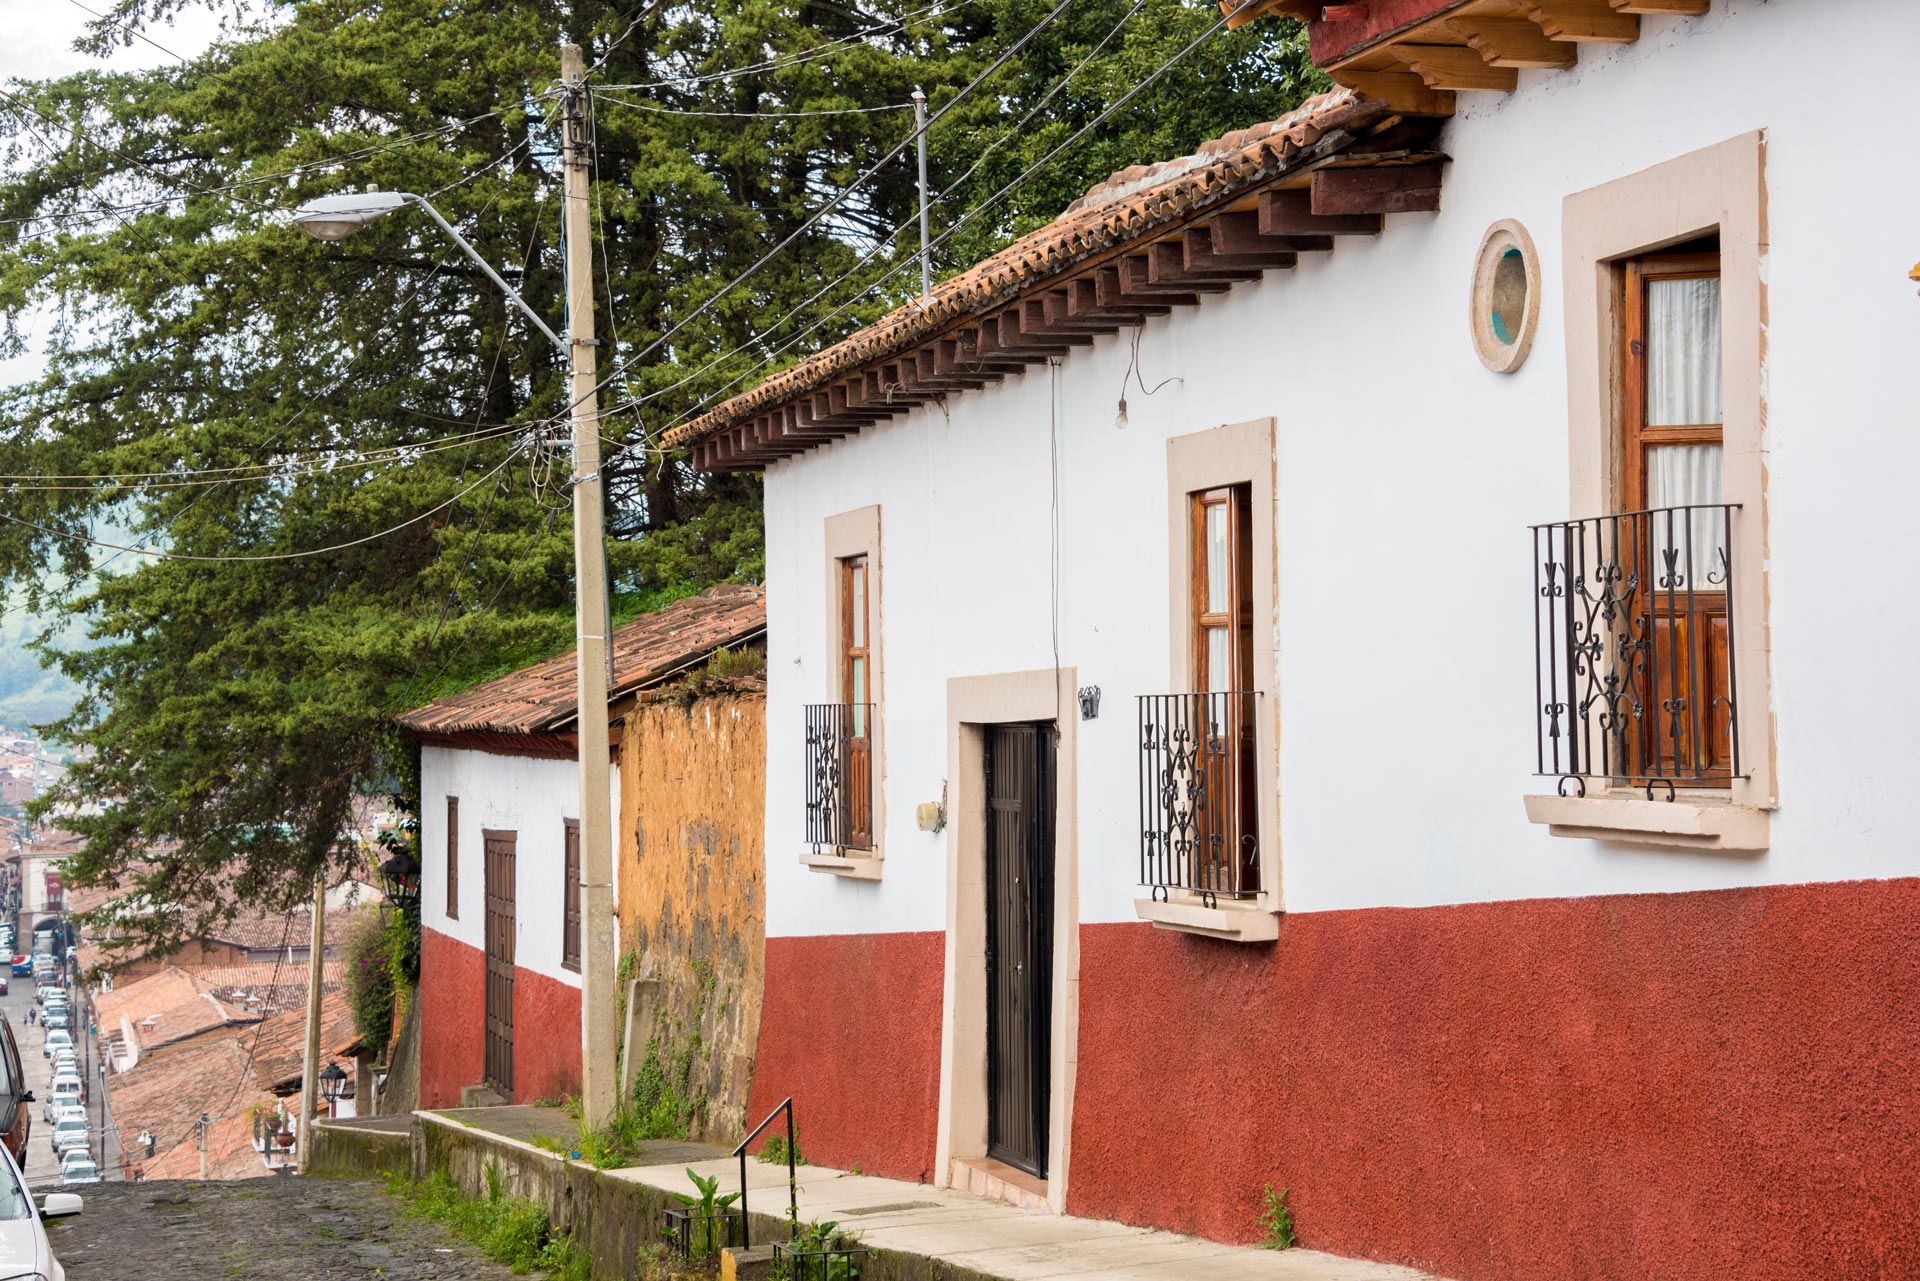 Propiedad en renta | Casas en renta | Casas en venta | Pátzcuaro Michoacán  | Farias Flores Inmobiliaria